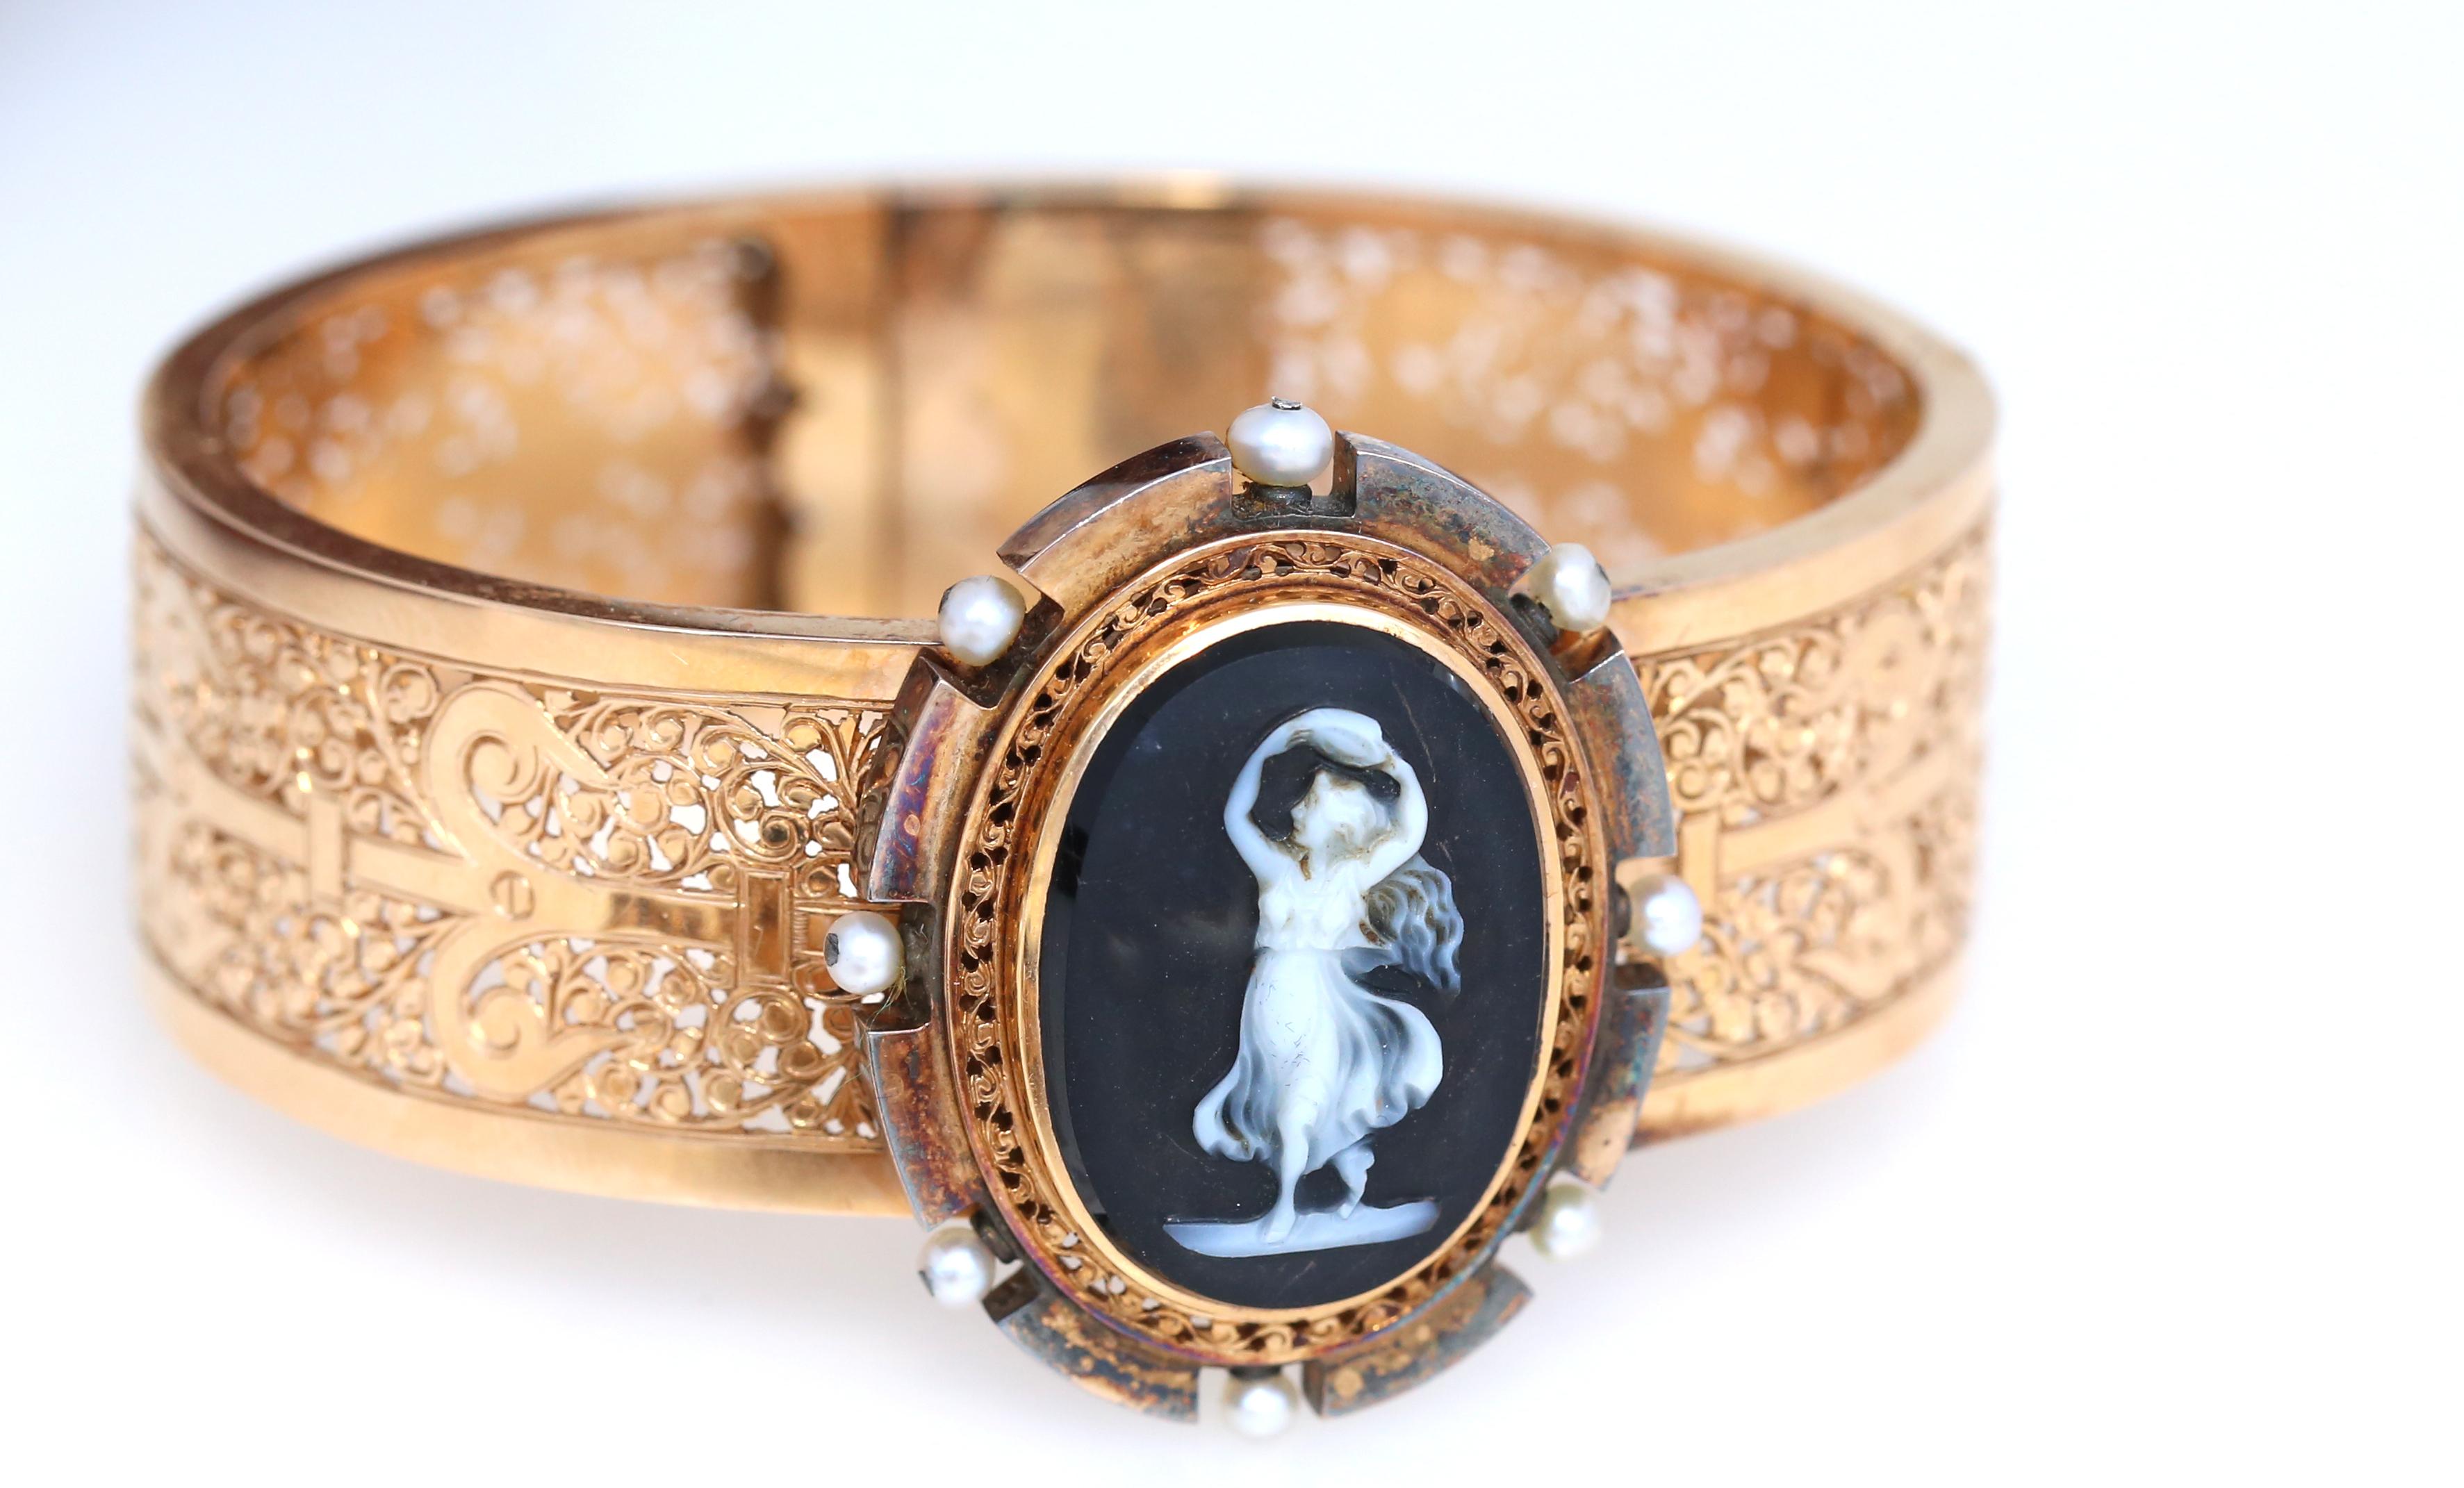 Bracelet pendentif en onyx avec camée victorien en or 18 carats dans sa boîte d'origine.
Set de camées victorien de 1900 dans sa boîte d'origine. Bracelet, boucles d'oreilles et broche, qui peut également être portée en pendentif. Réalisé en onyx,